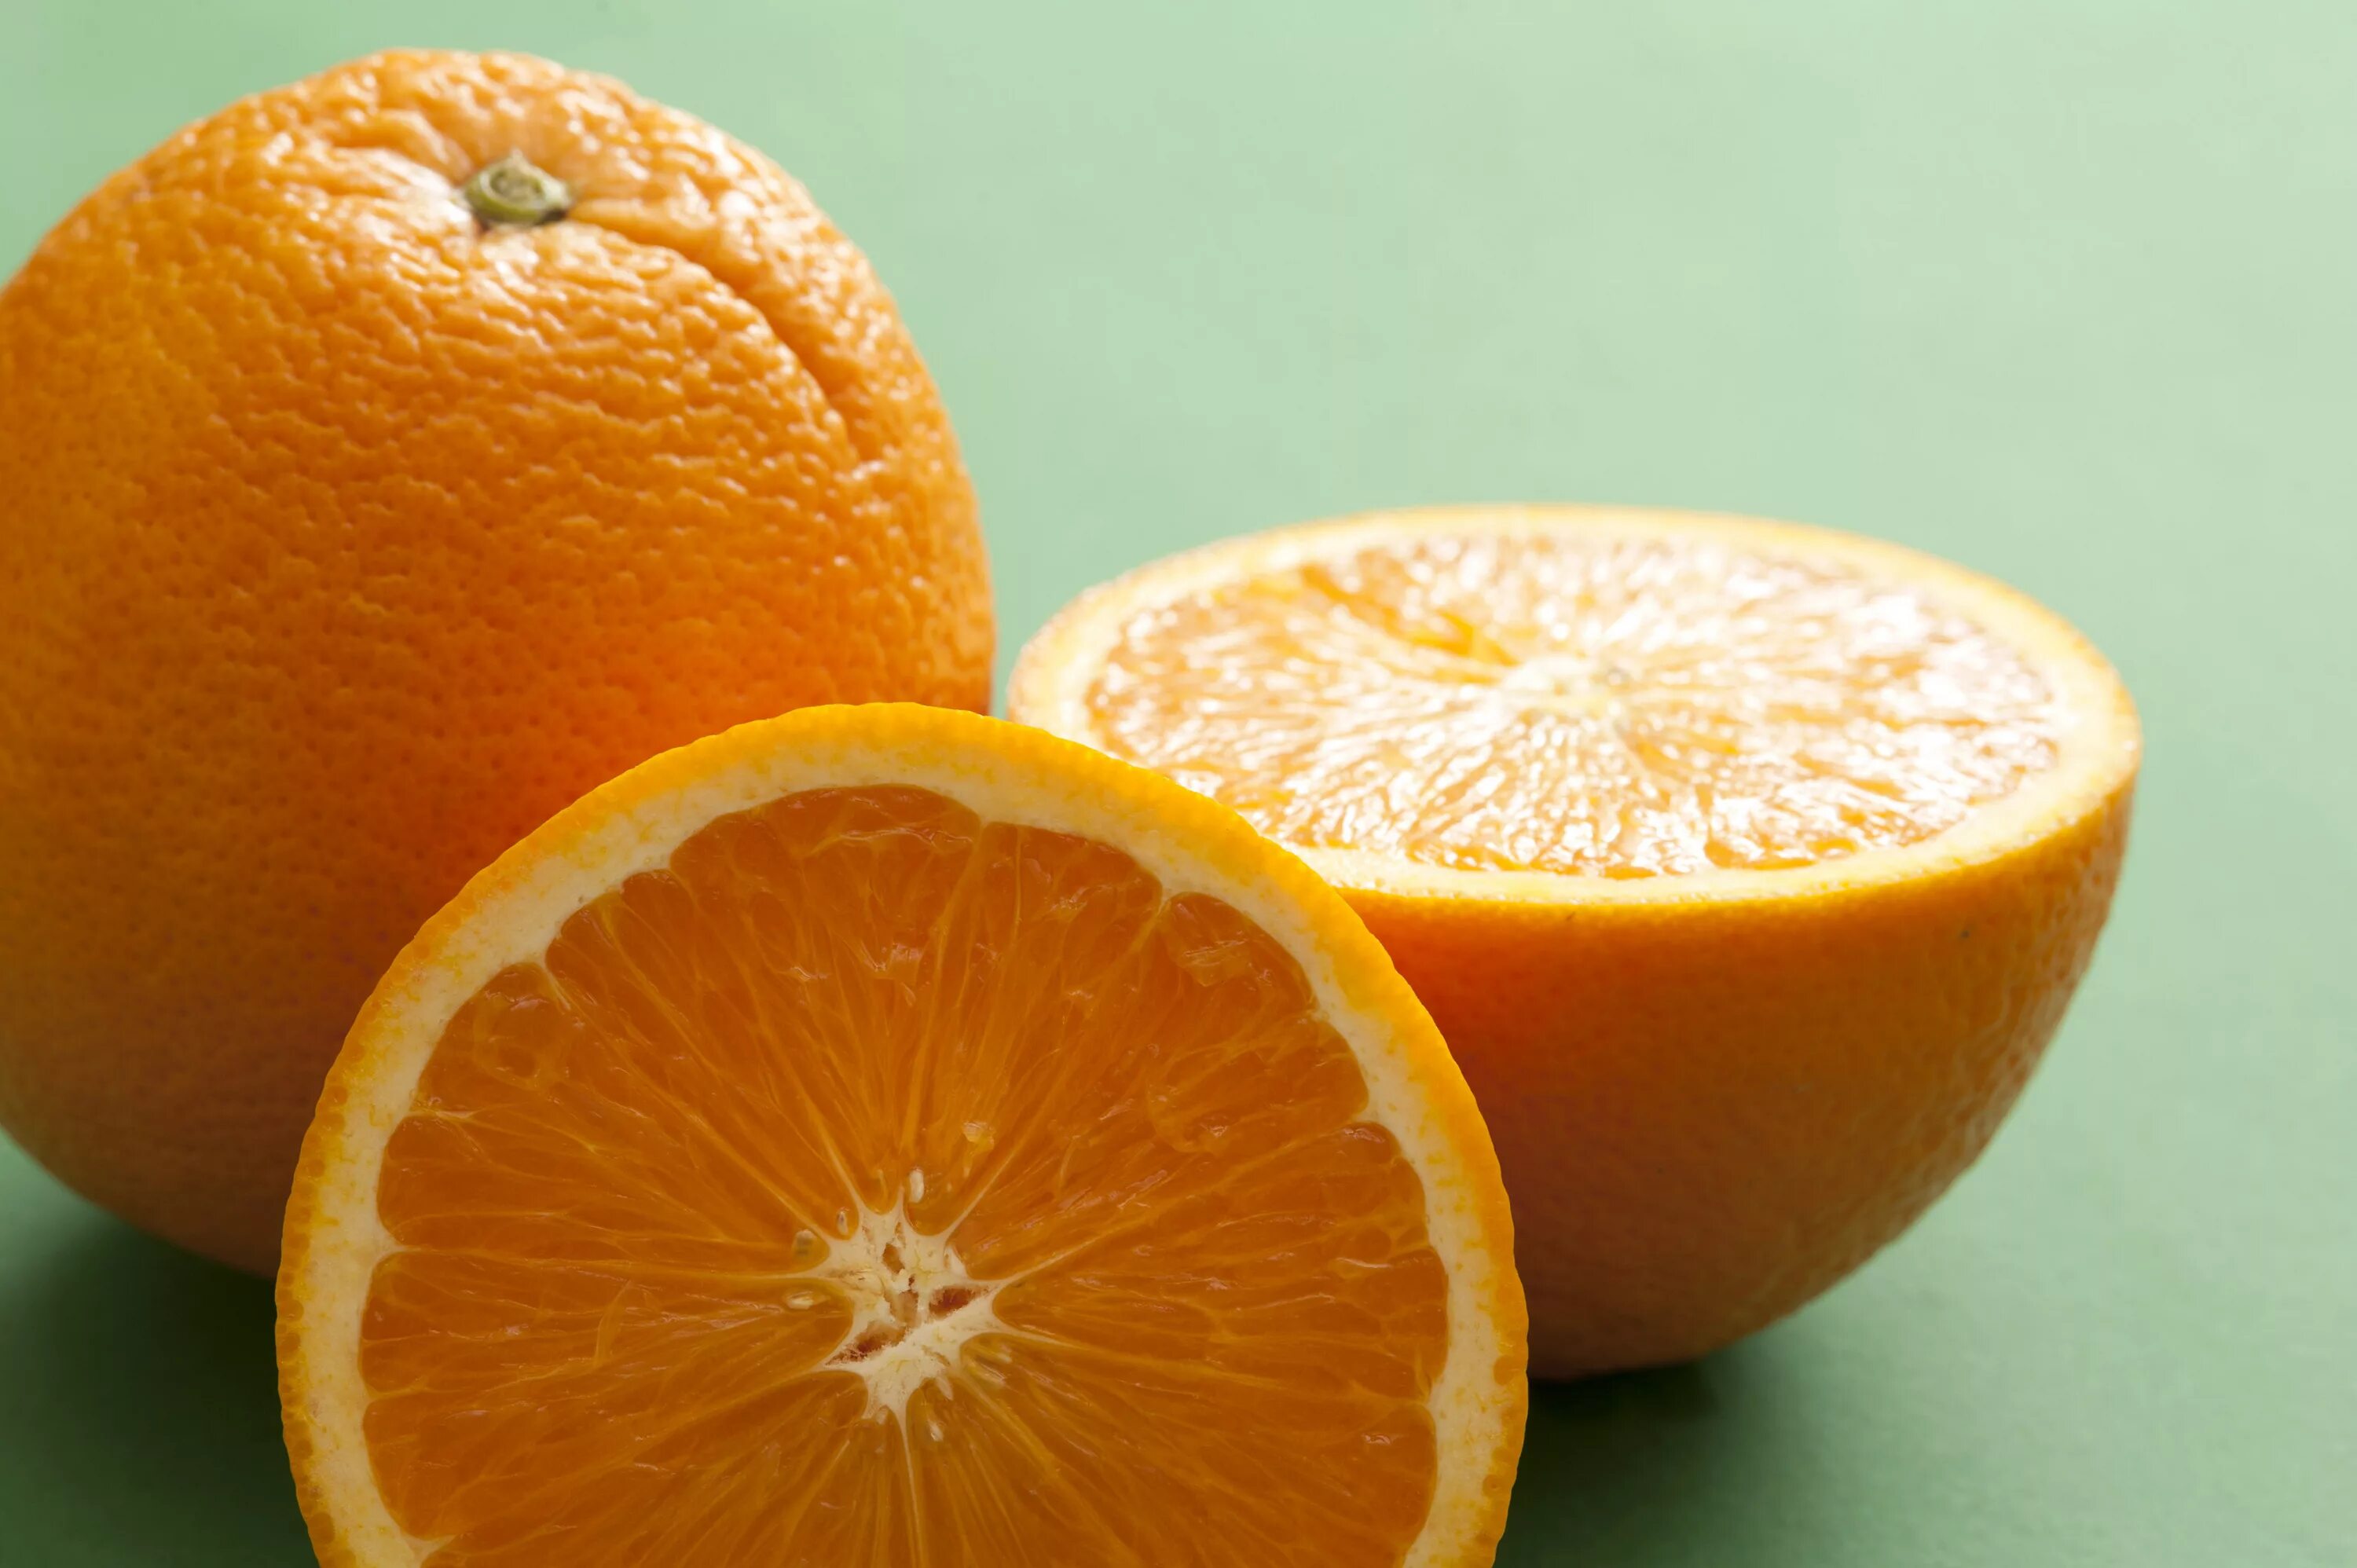 Two oranges. Apelsin 1:1. Апельсин (плод). Оранжевый апельсин. Срез апельсина.